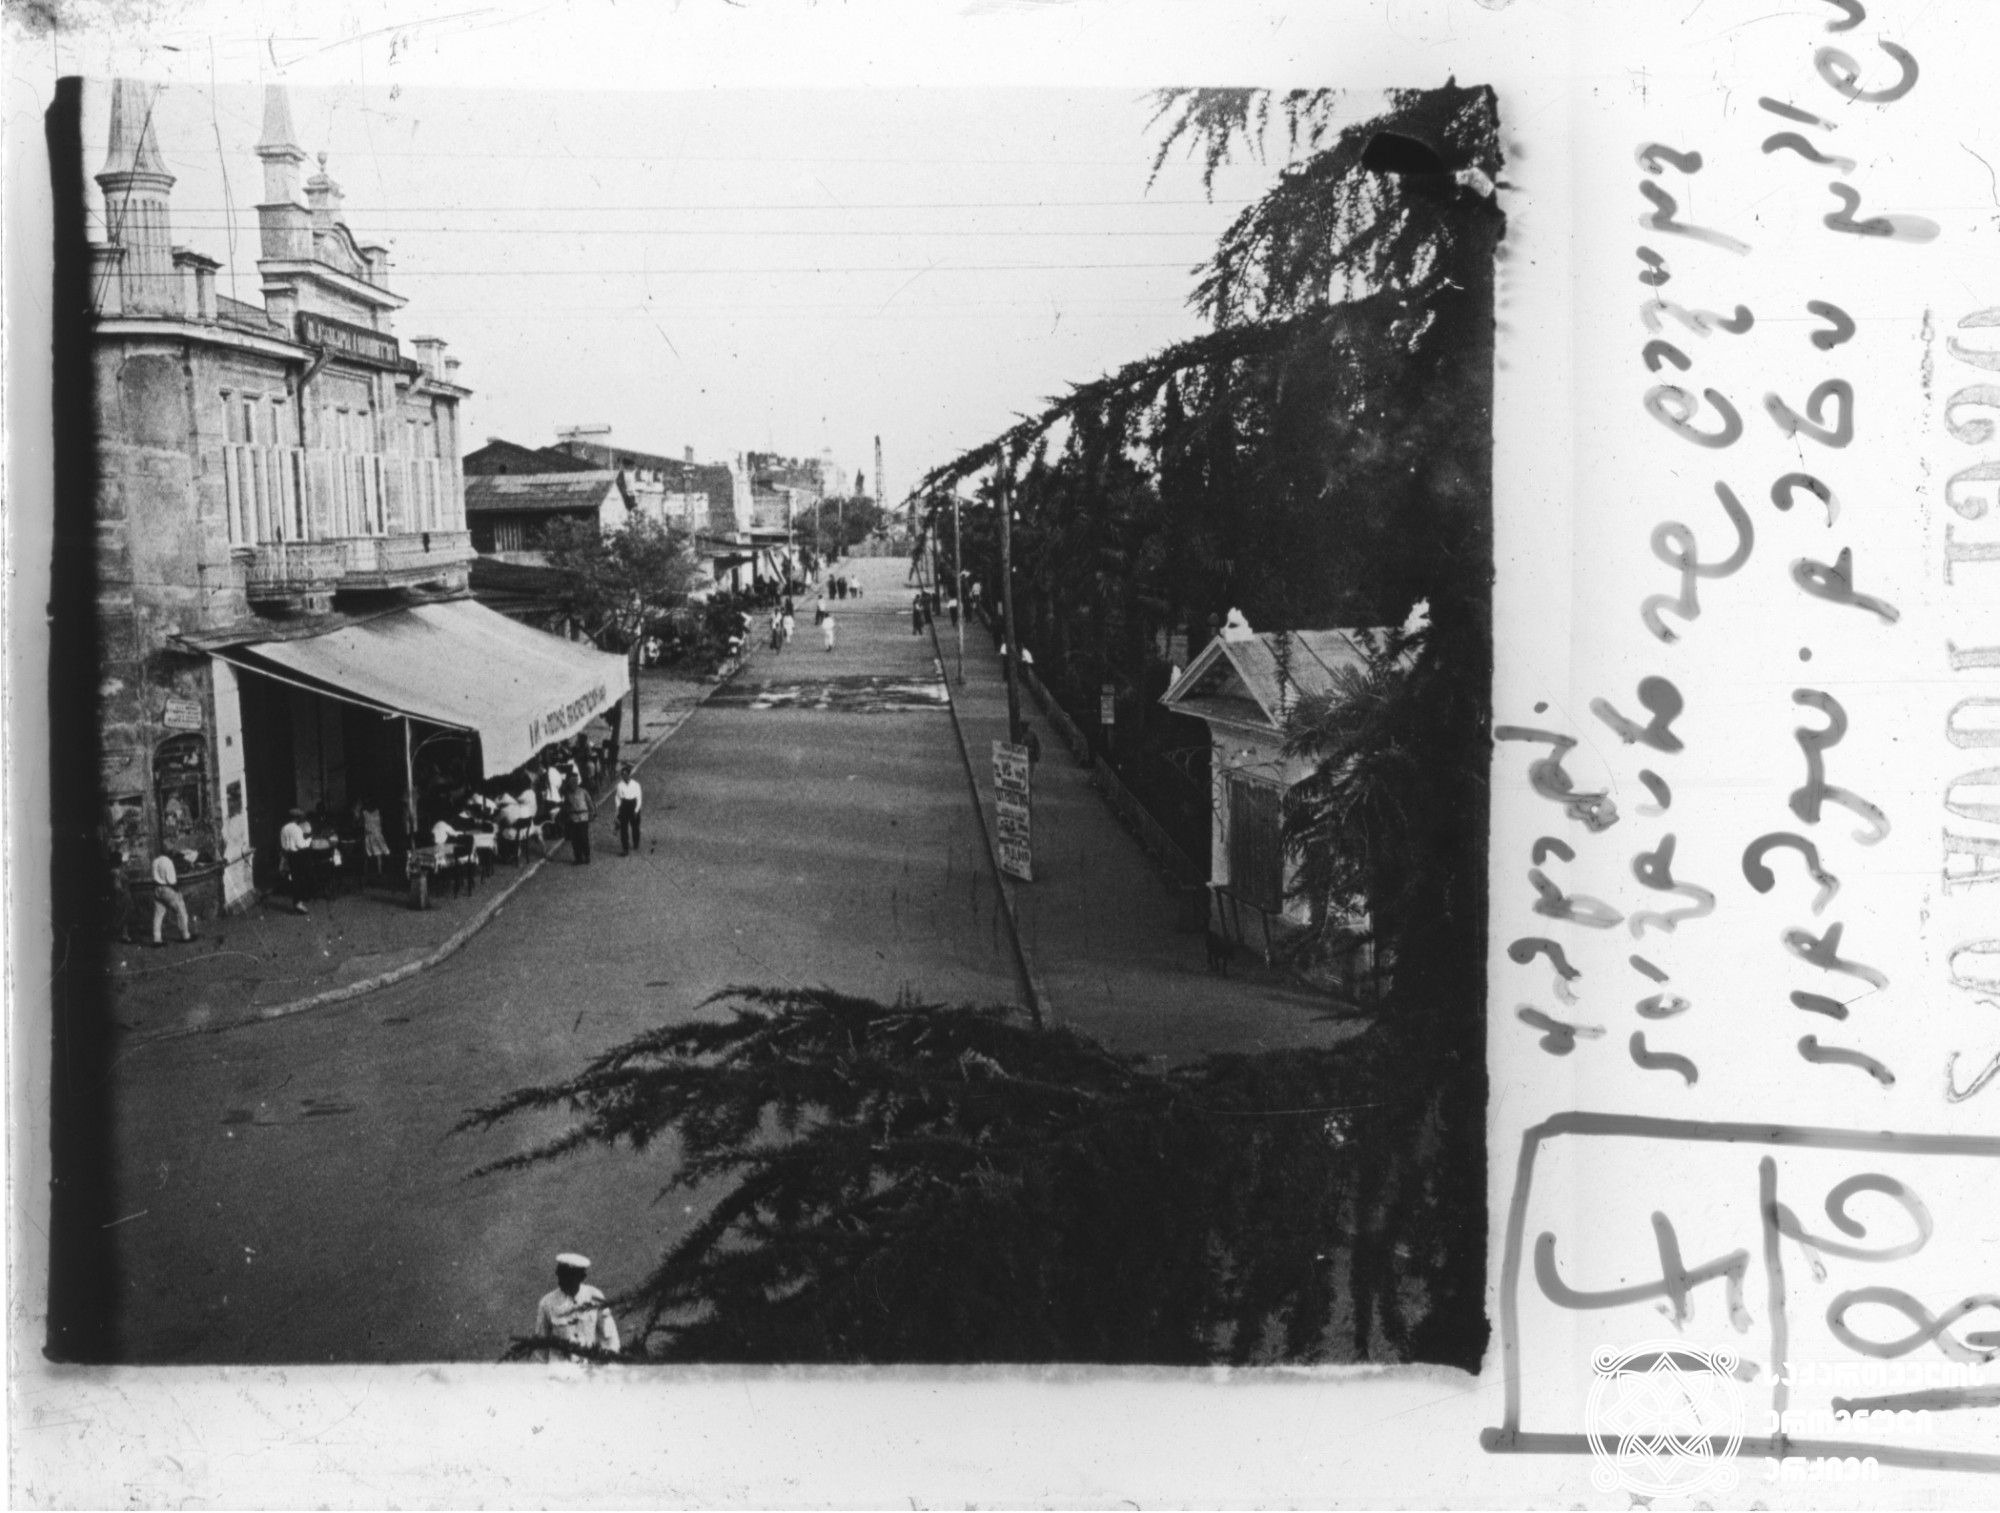 „სოხუმი. ხედი ჩვენი სახლიდან ნაპირა ქუჩაზე“ (ნიკო ნიკოლაძის წარწერა ფირზე) <br>
1930 წელი <br>
გიორგი ნიკოლაძის ფოტო  <br>
"Sokhumi. View from our house on a side-street" (Niko Nikoladze's inscription on the tape) <br>
1930 <br>
Giorgi Nikoladze's photo